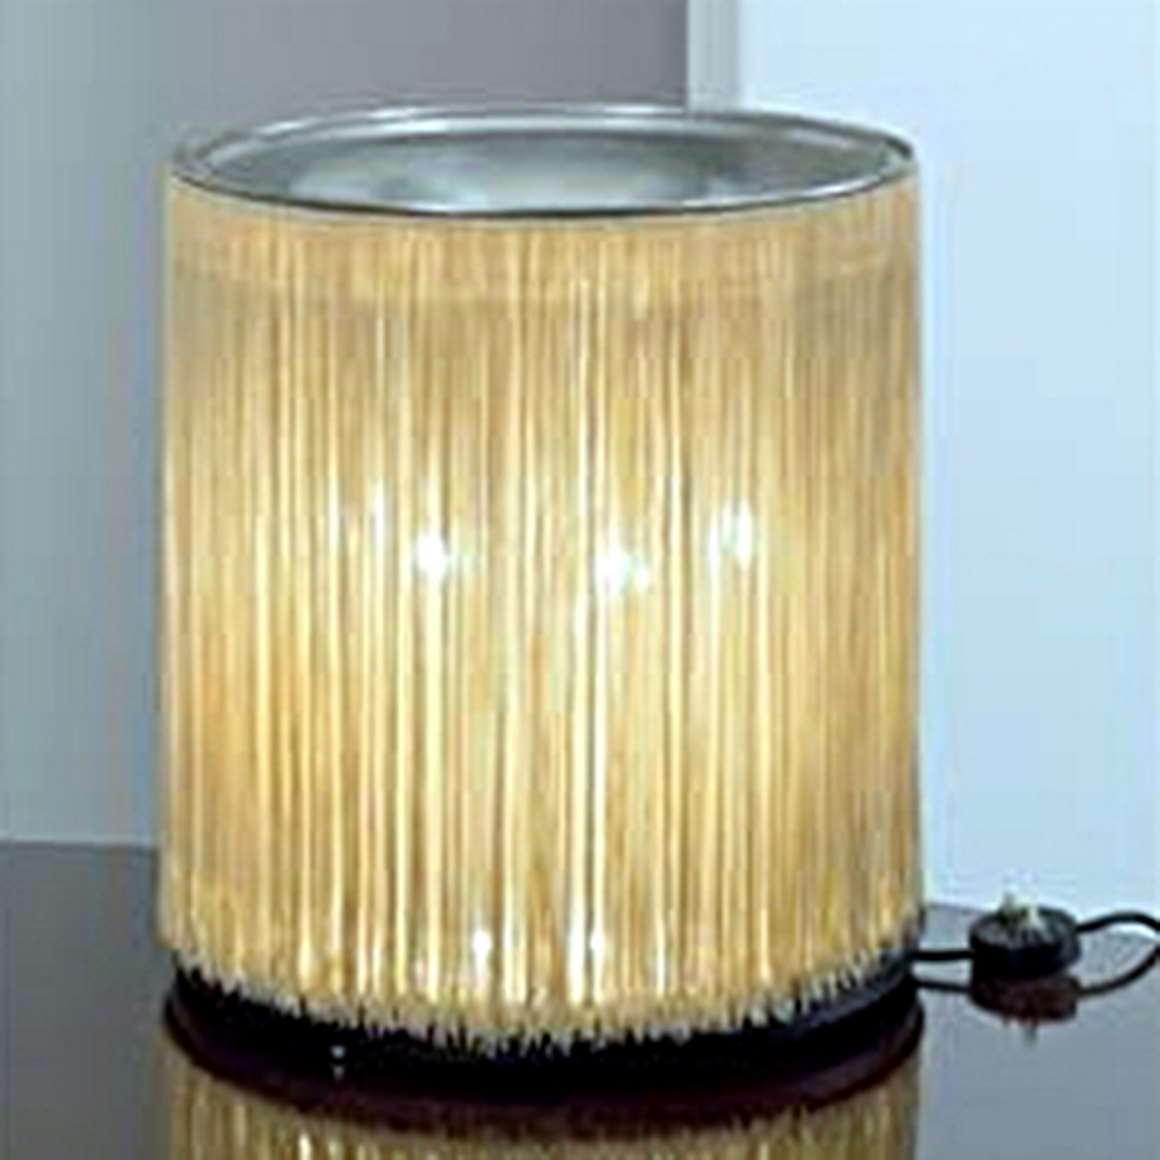 Gianfranco Frattini - Arteluce 597 lamp - 1964